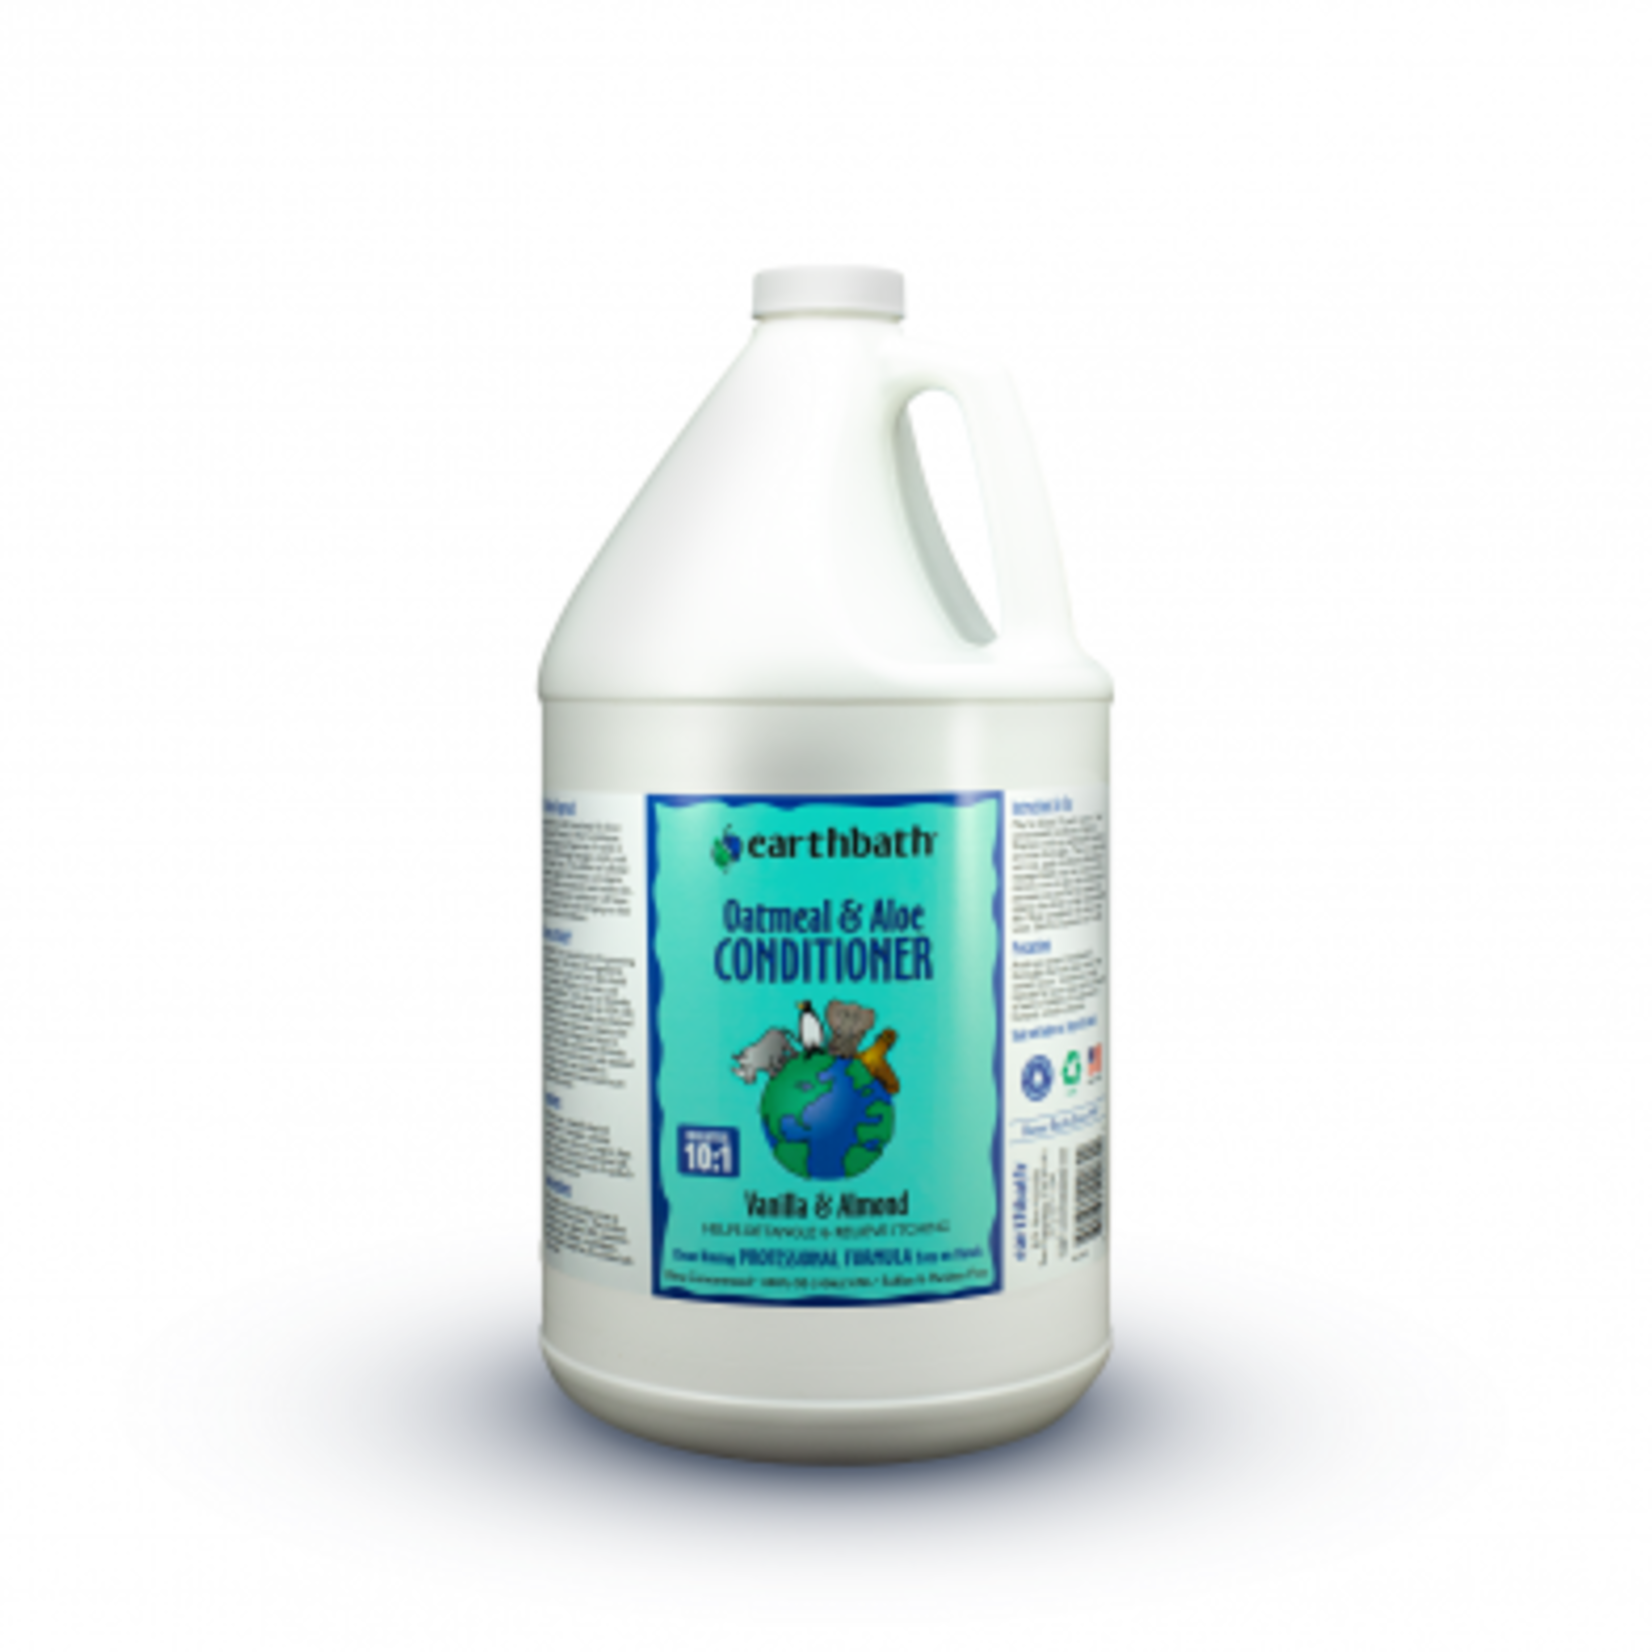 EARTH BATH Earthbath Oatmeal & Aloe Conditioner- Vanilla and Almond 3.78L